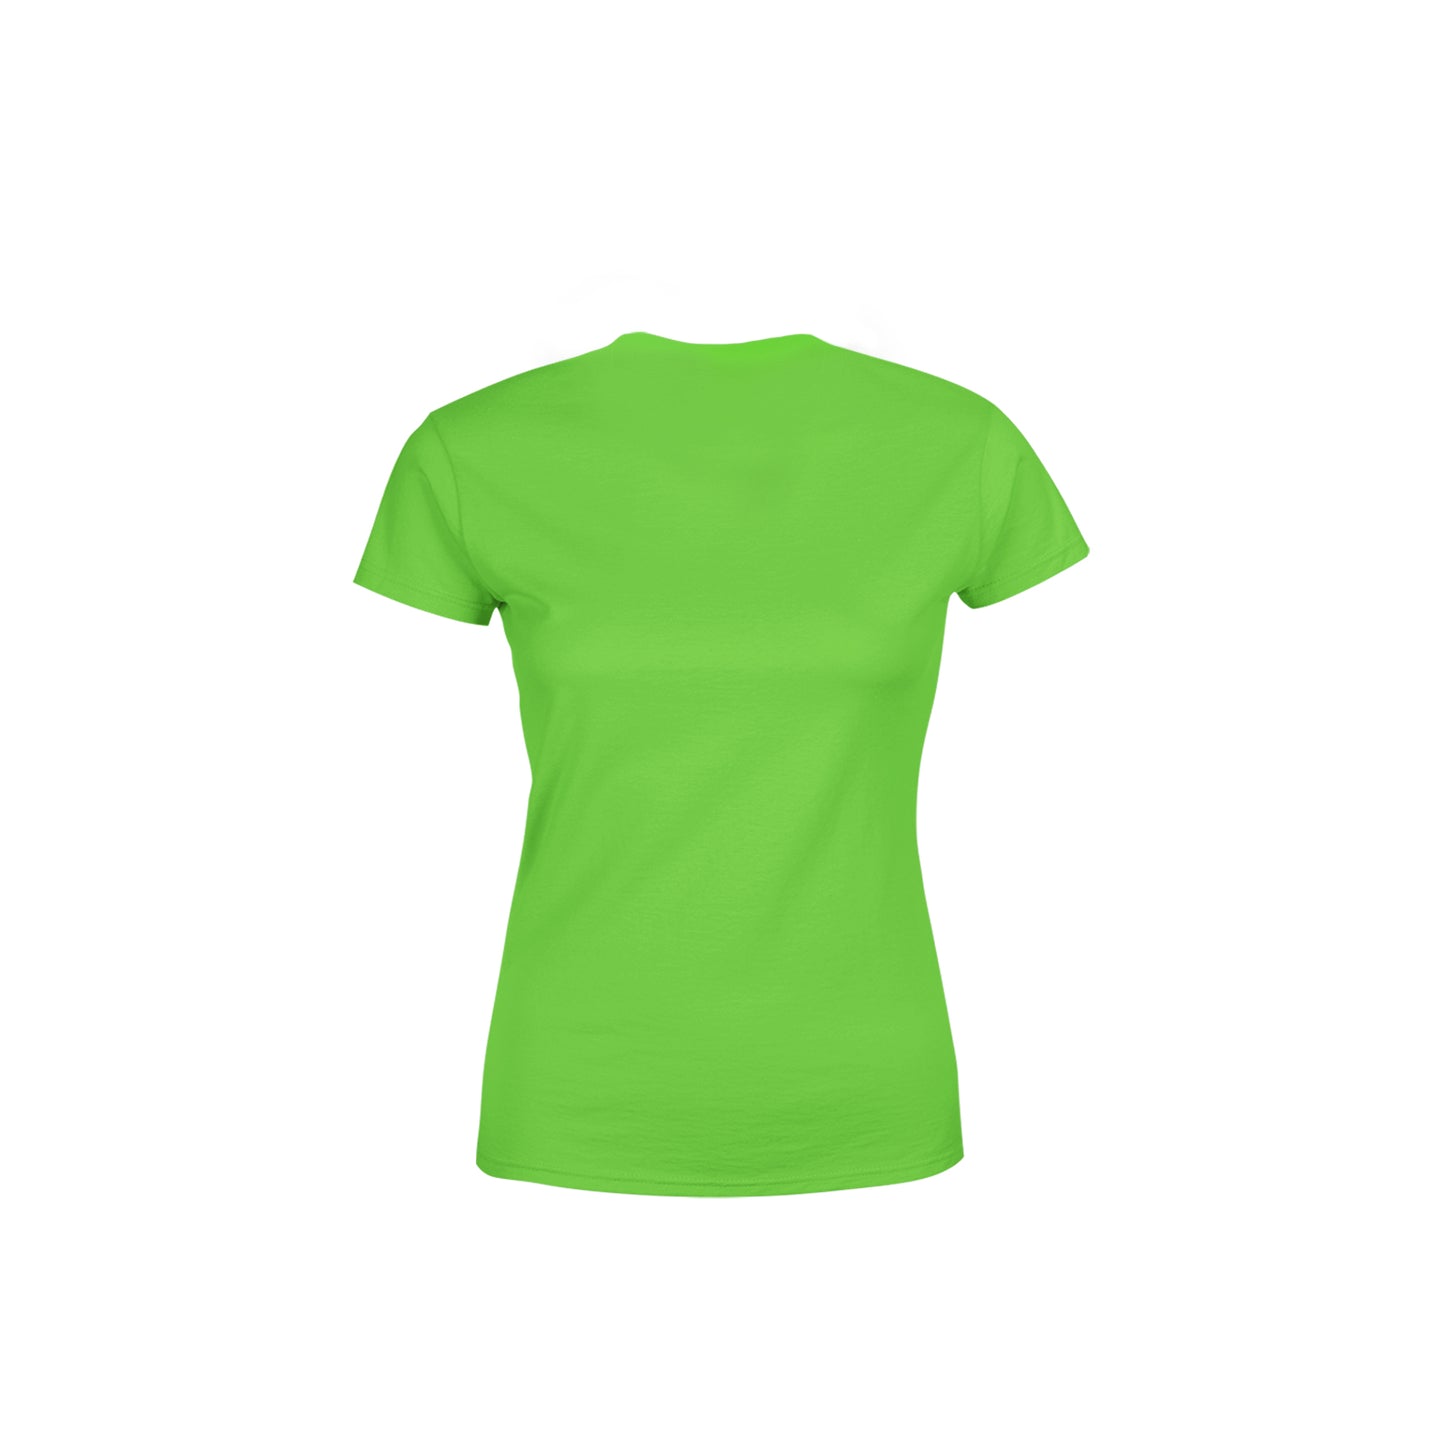 26 Number Women's T-Shirt (Liril Green)